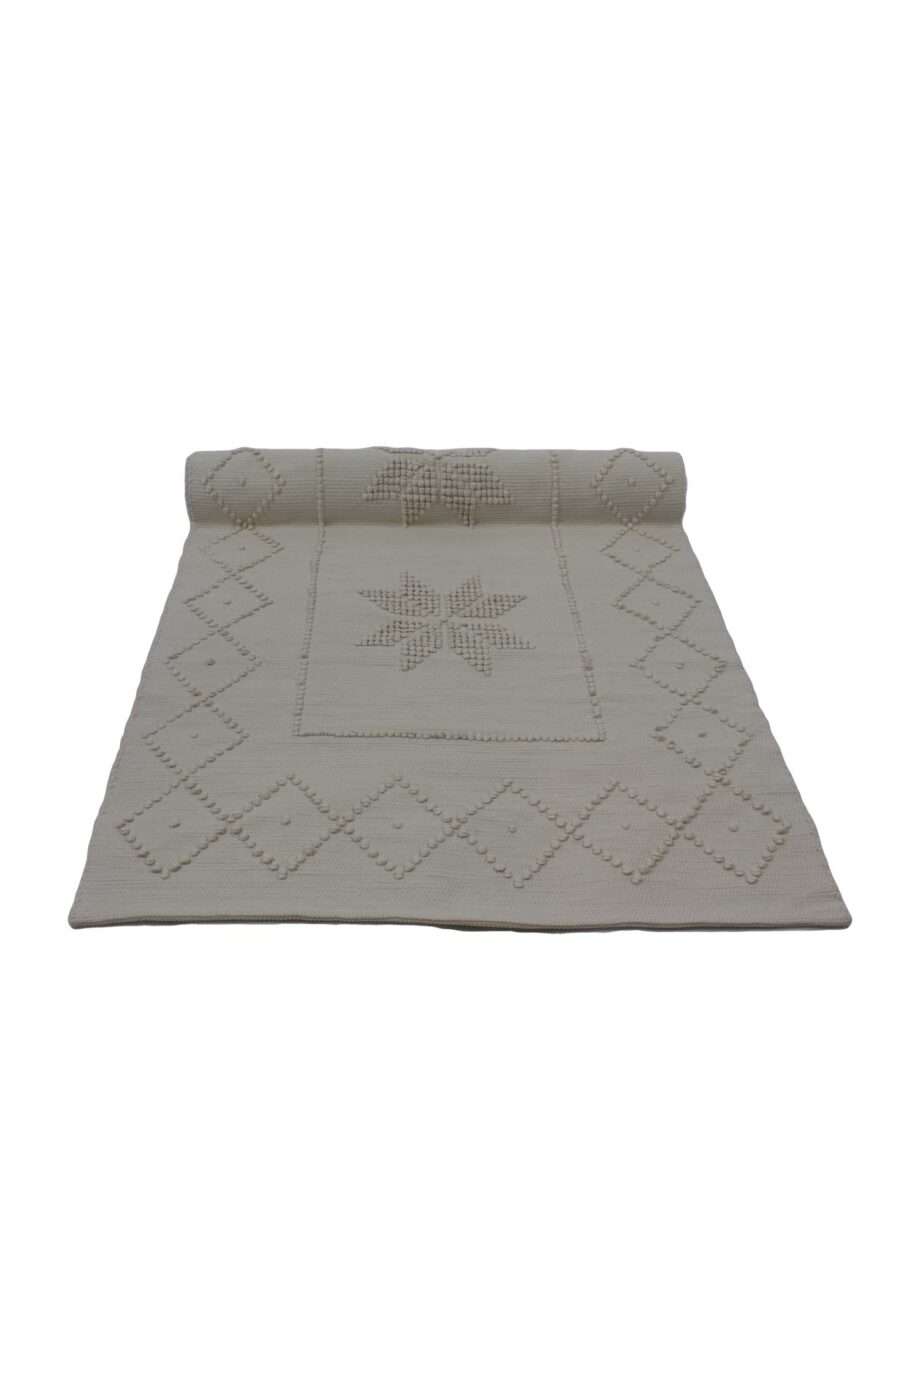 star linen woven cotton floor mat small